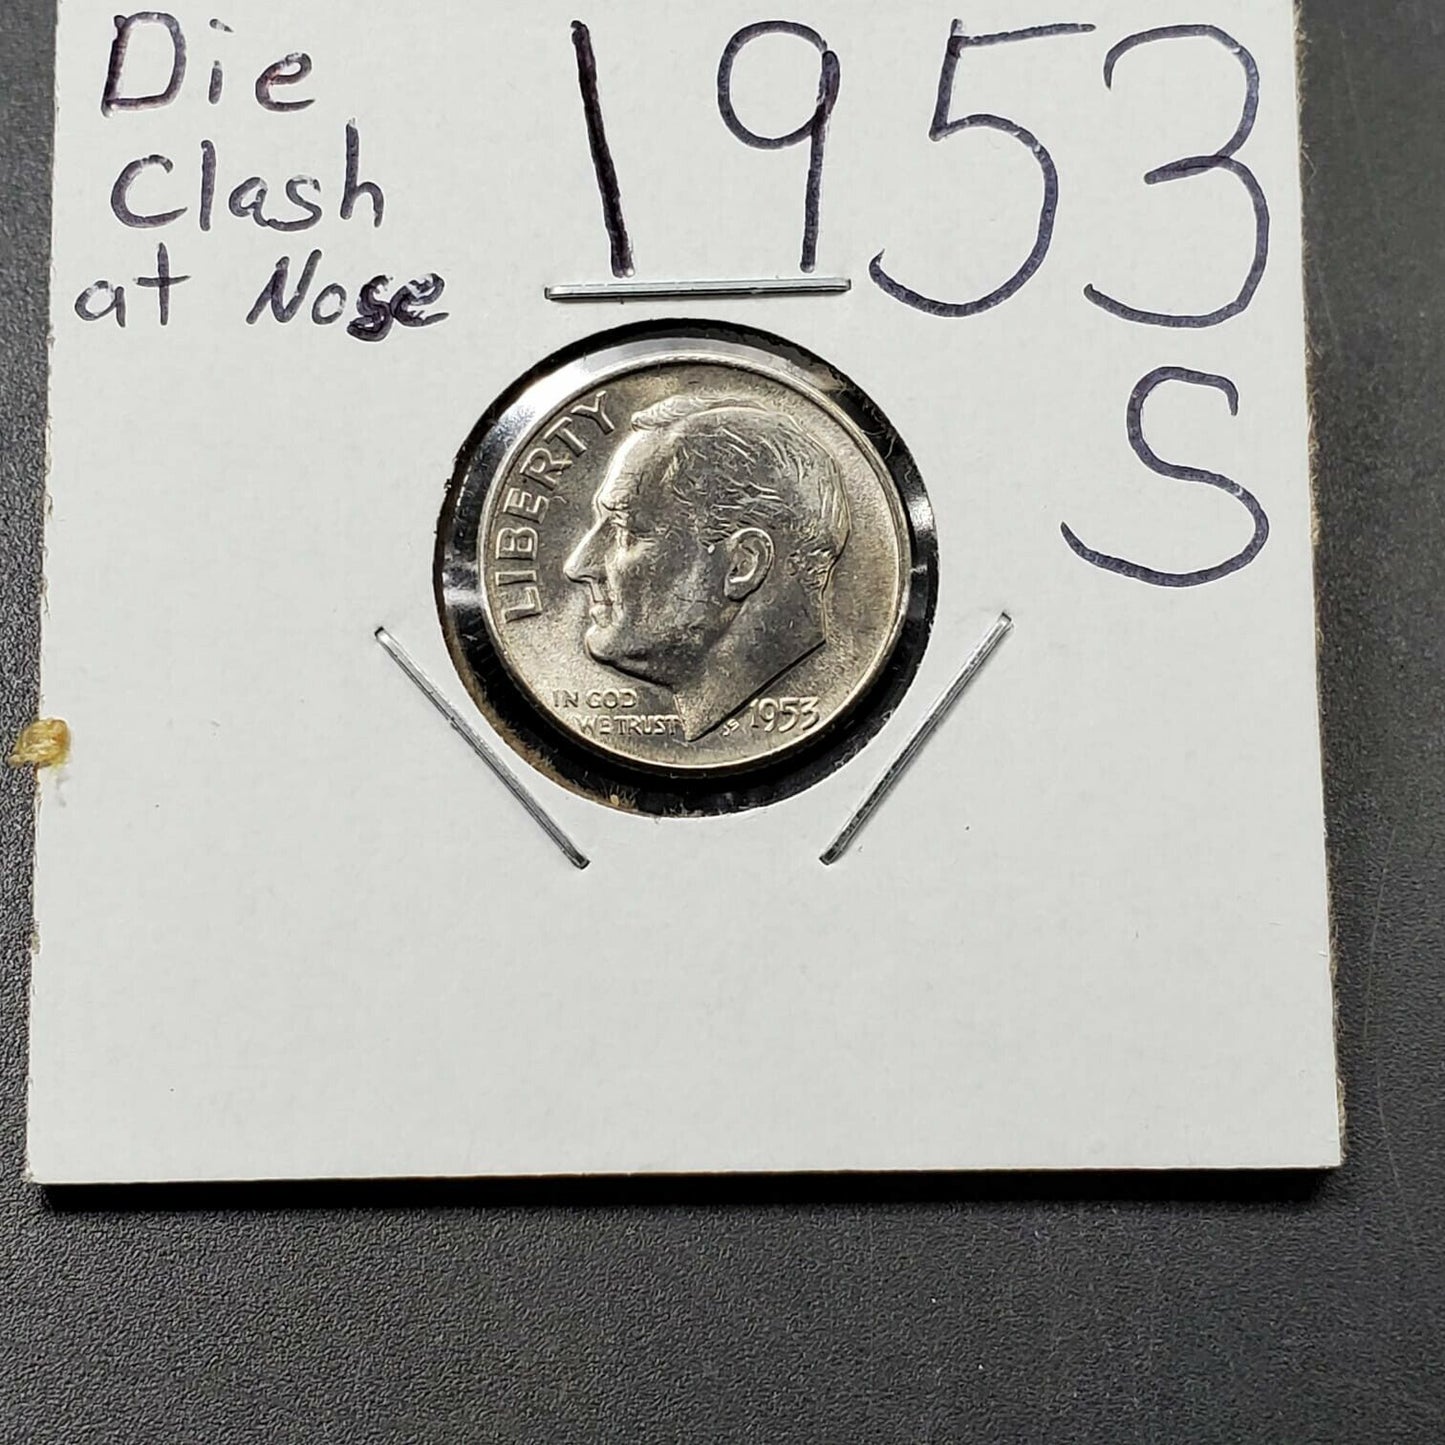 1953 S Roosevelt Silver Dime Coin Die Clash on nose + chips error variety Gem BU